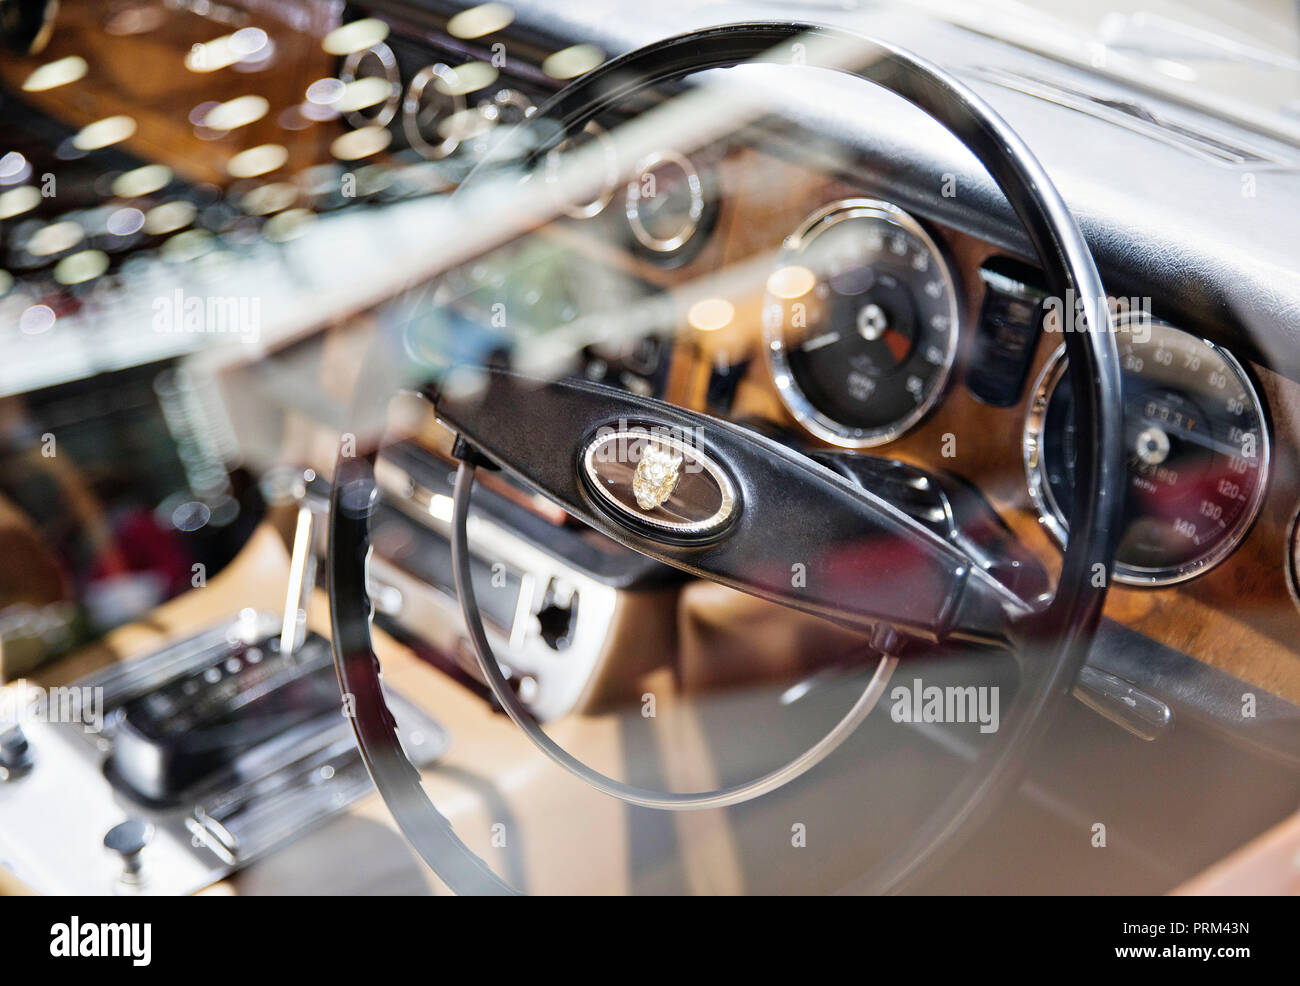 1950 Jaguar avec moteur 4.2Liter est affiché durant la première journée presse du Salon International de l'Automobile à Paris, France, le Mardi, Octobre Banque D'Images